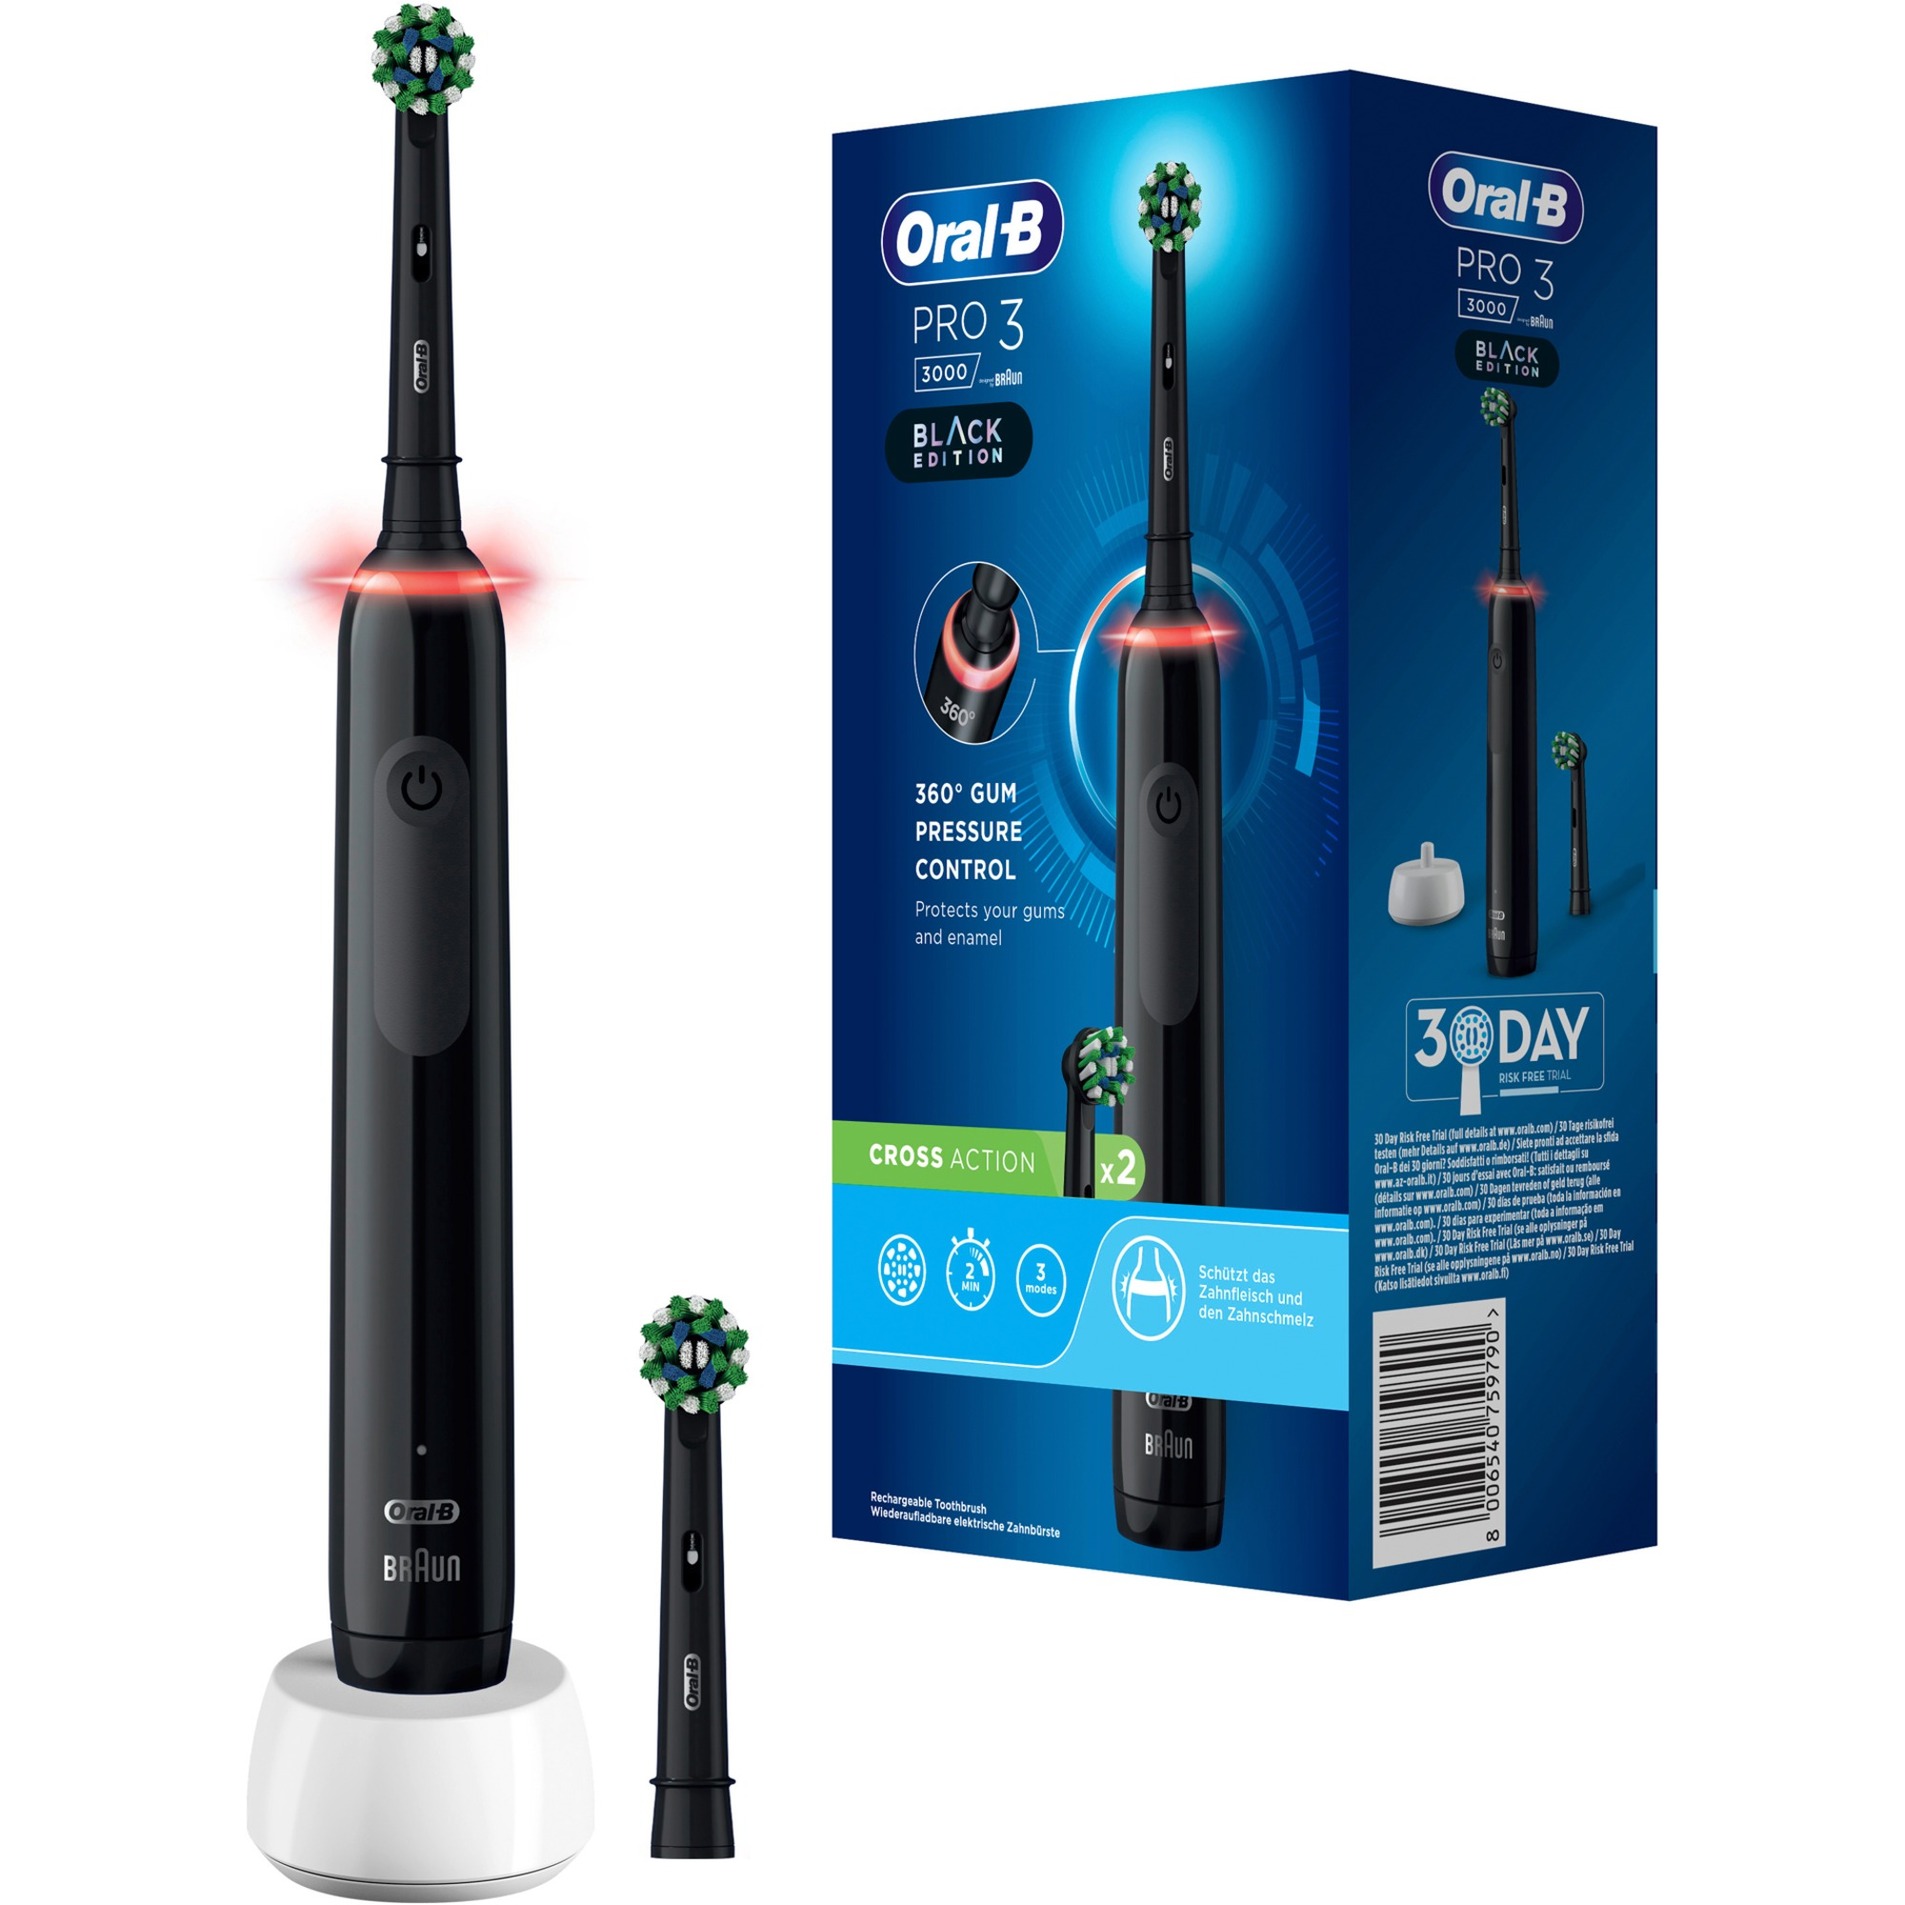 Oral-B Pro 3 3000 Elektrische Zahnbürste/Electric Toothbrush, mit 3 Putzmodi und visueller 360° Andruckkontrolle für Zahnpflege, 2 Aufsteckbürsten, Designed by Braun, schwarz